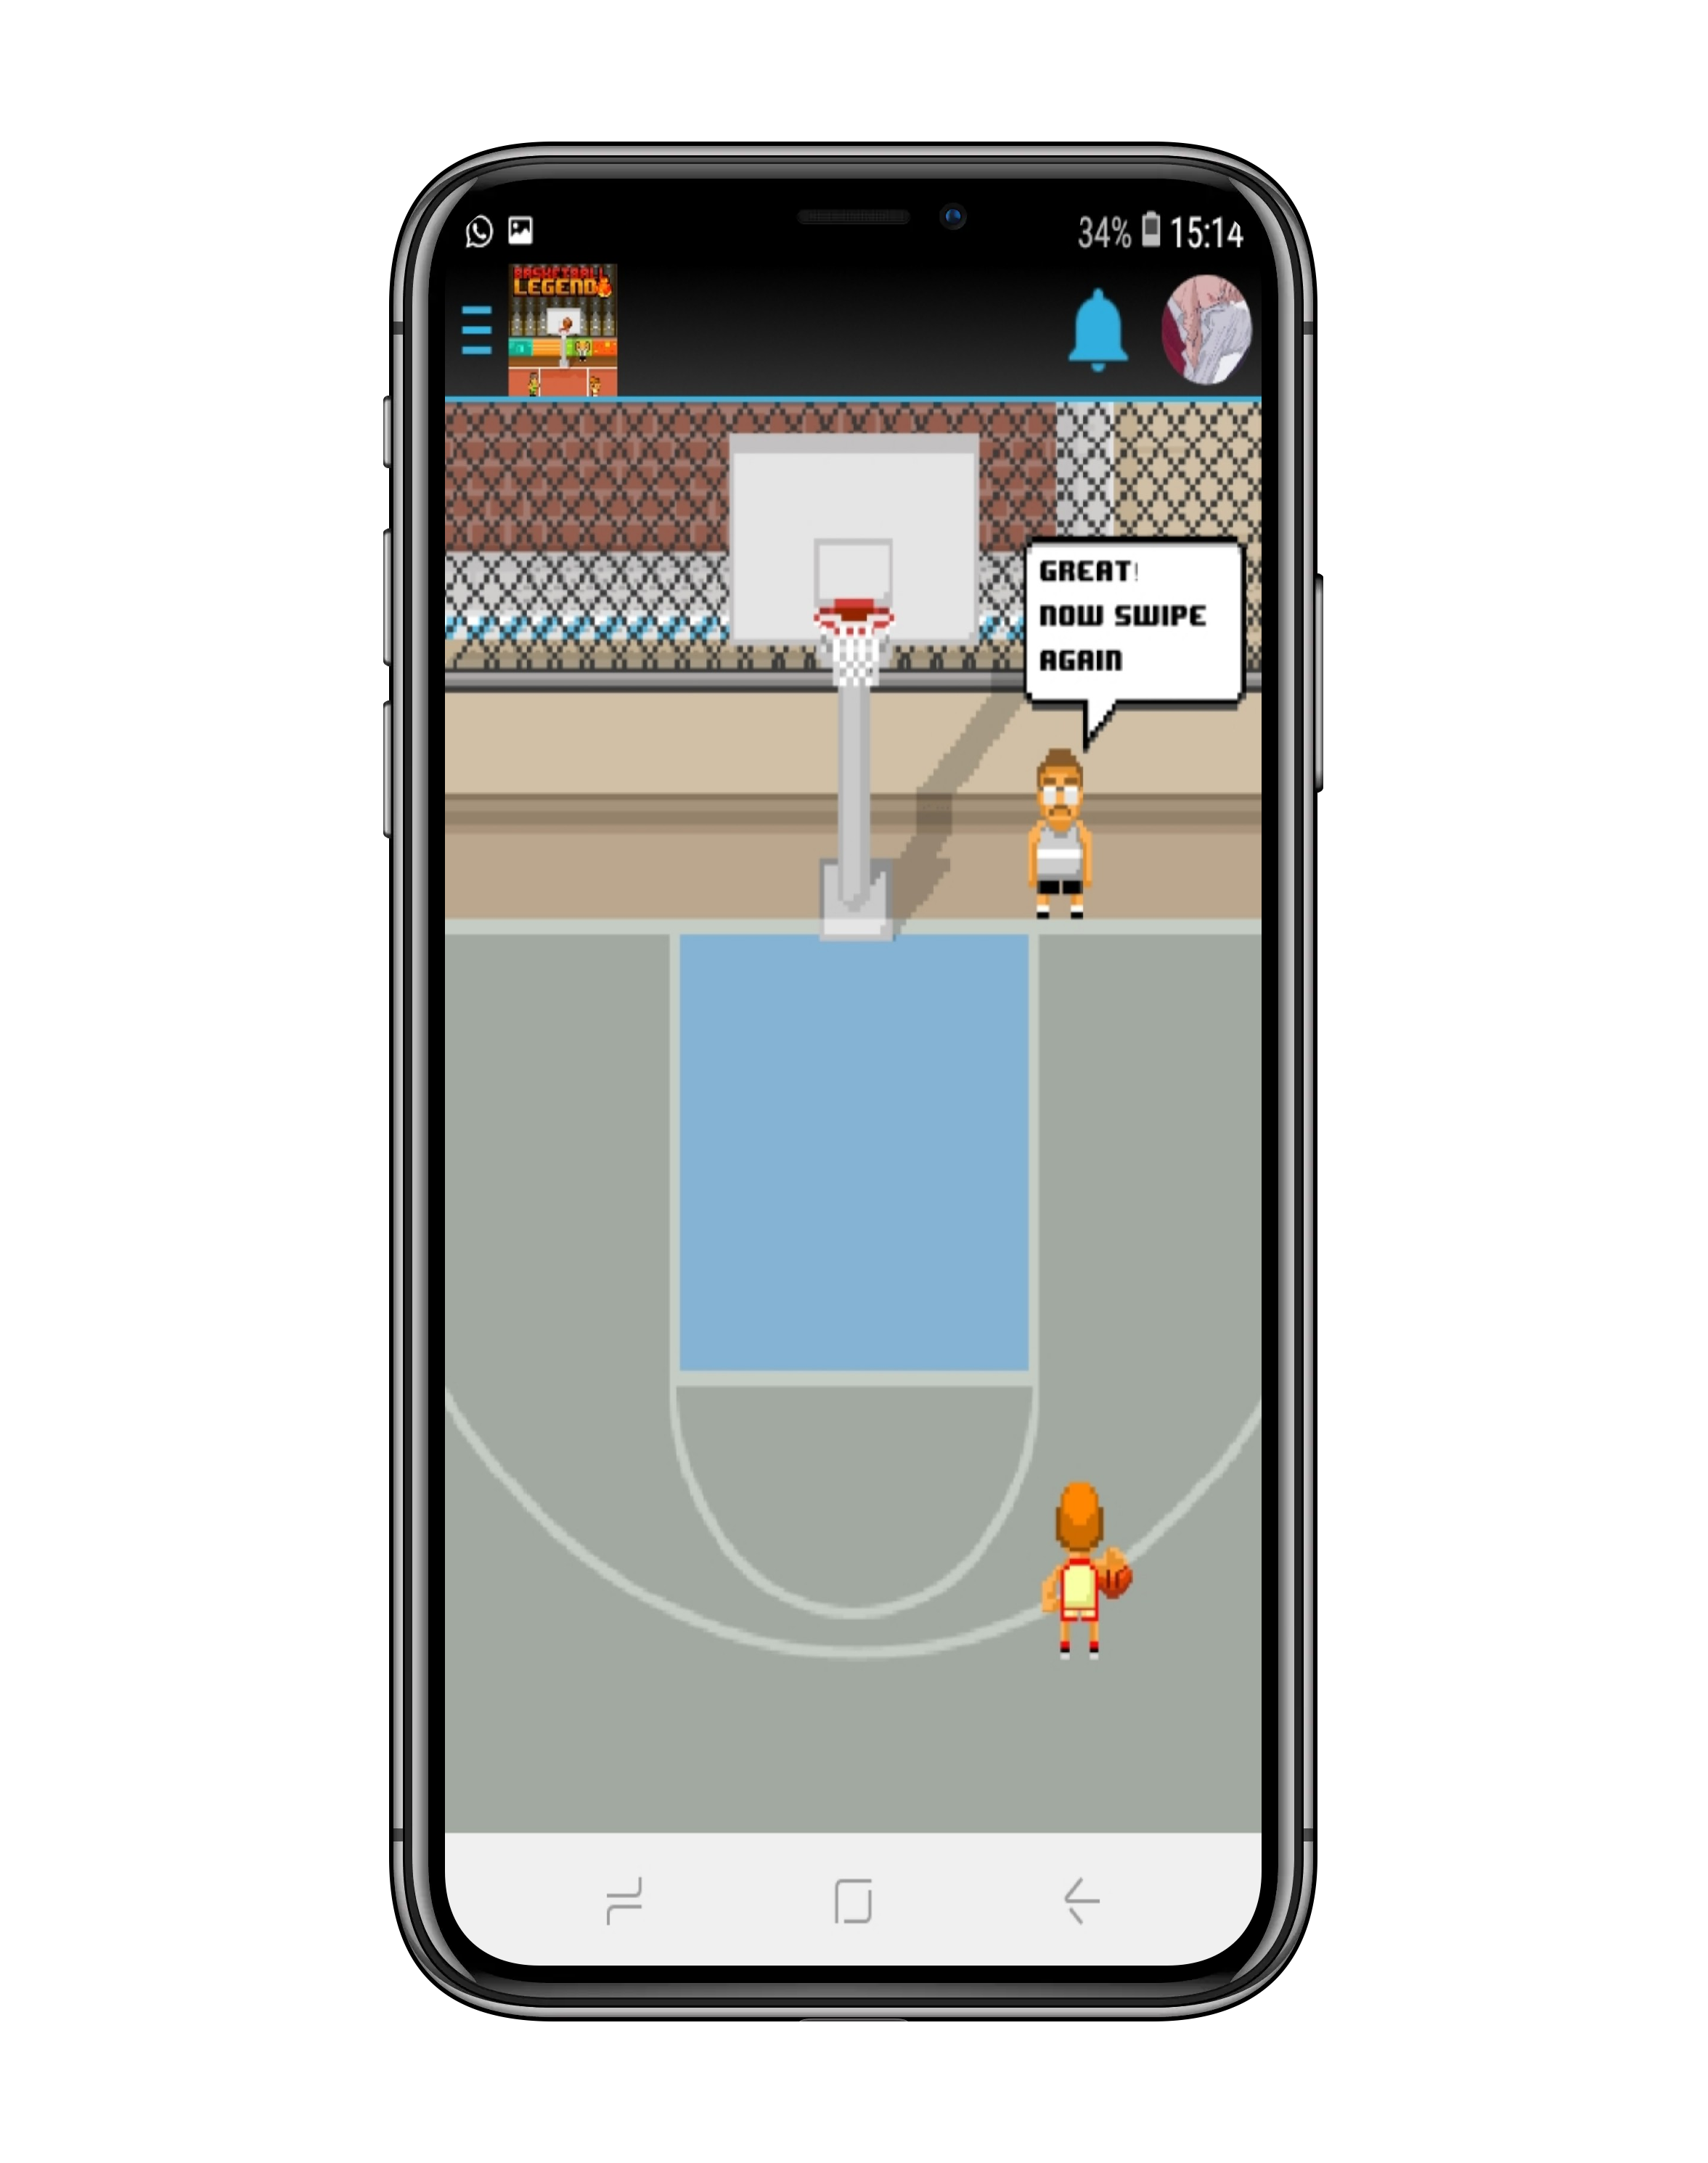 Basketball Legend 2 게임 스크린 샷